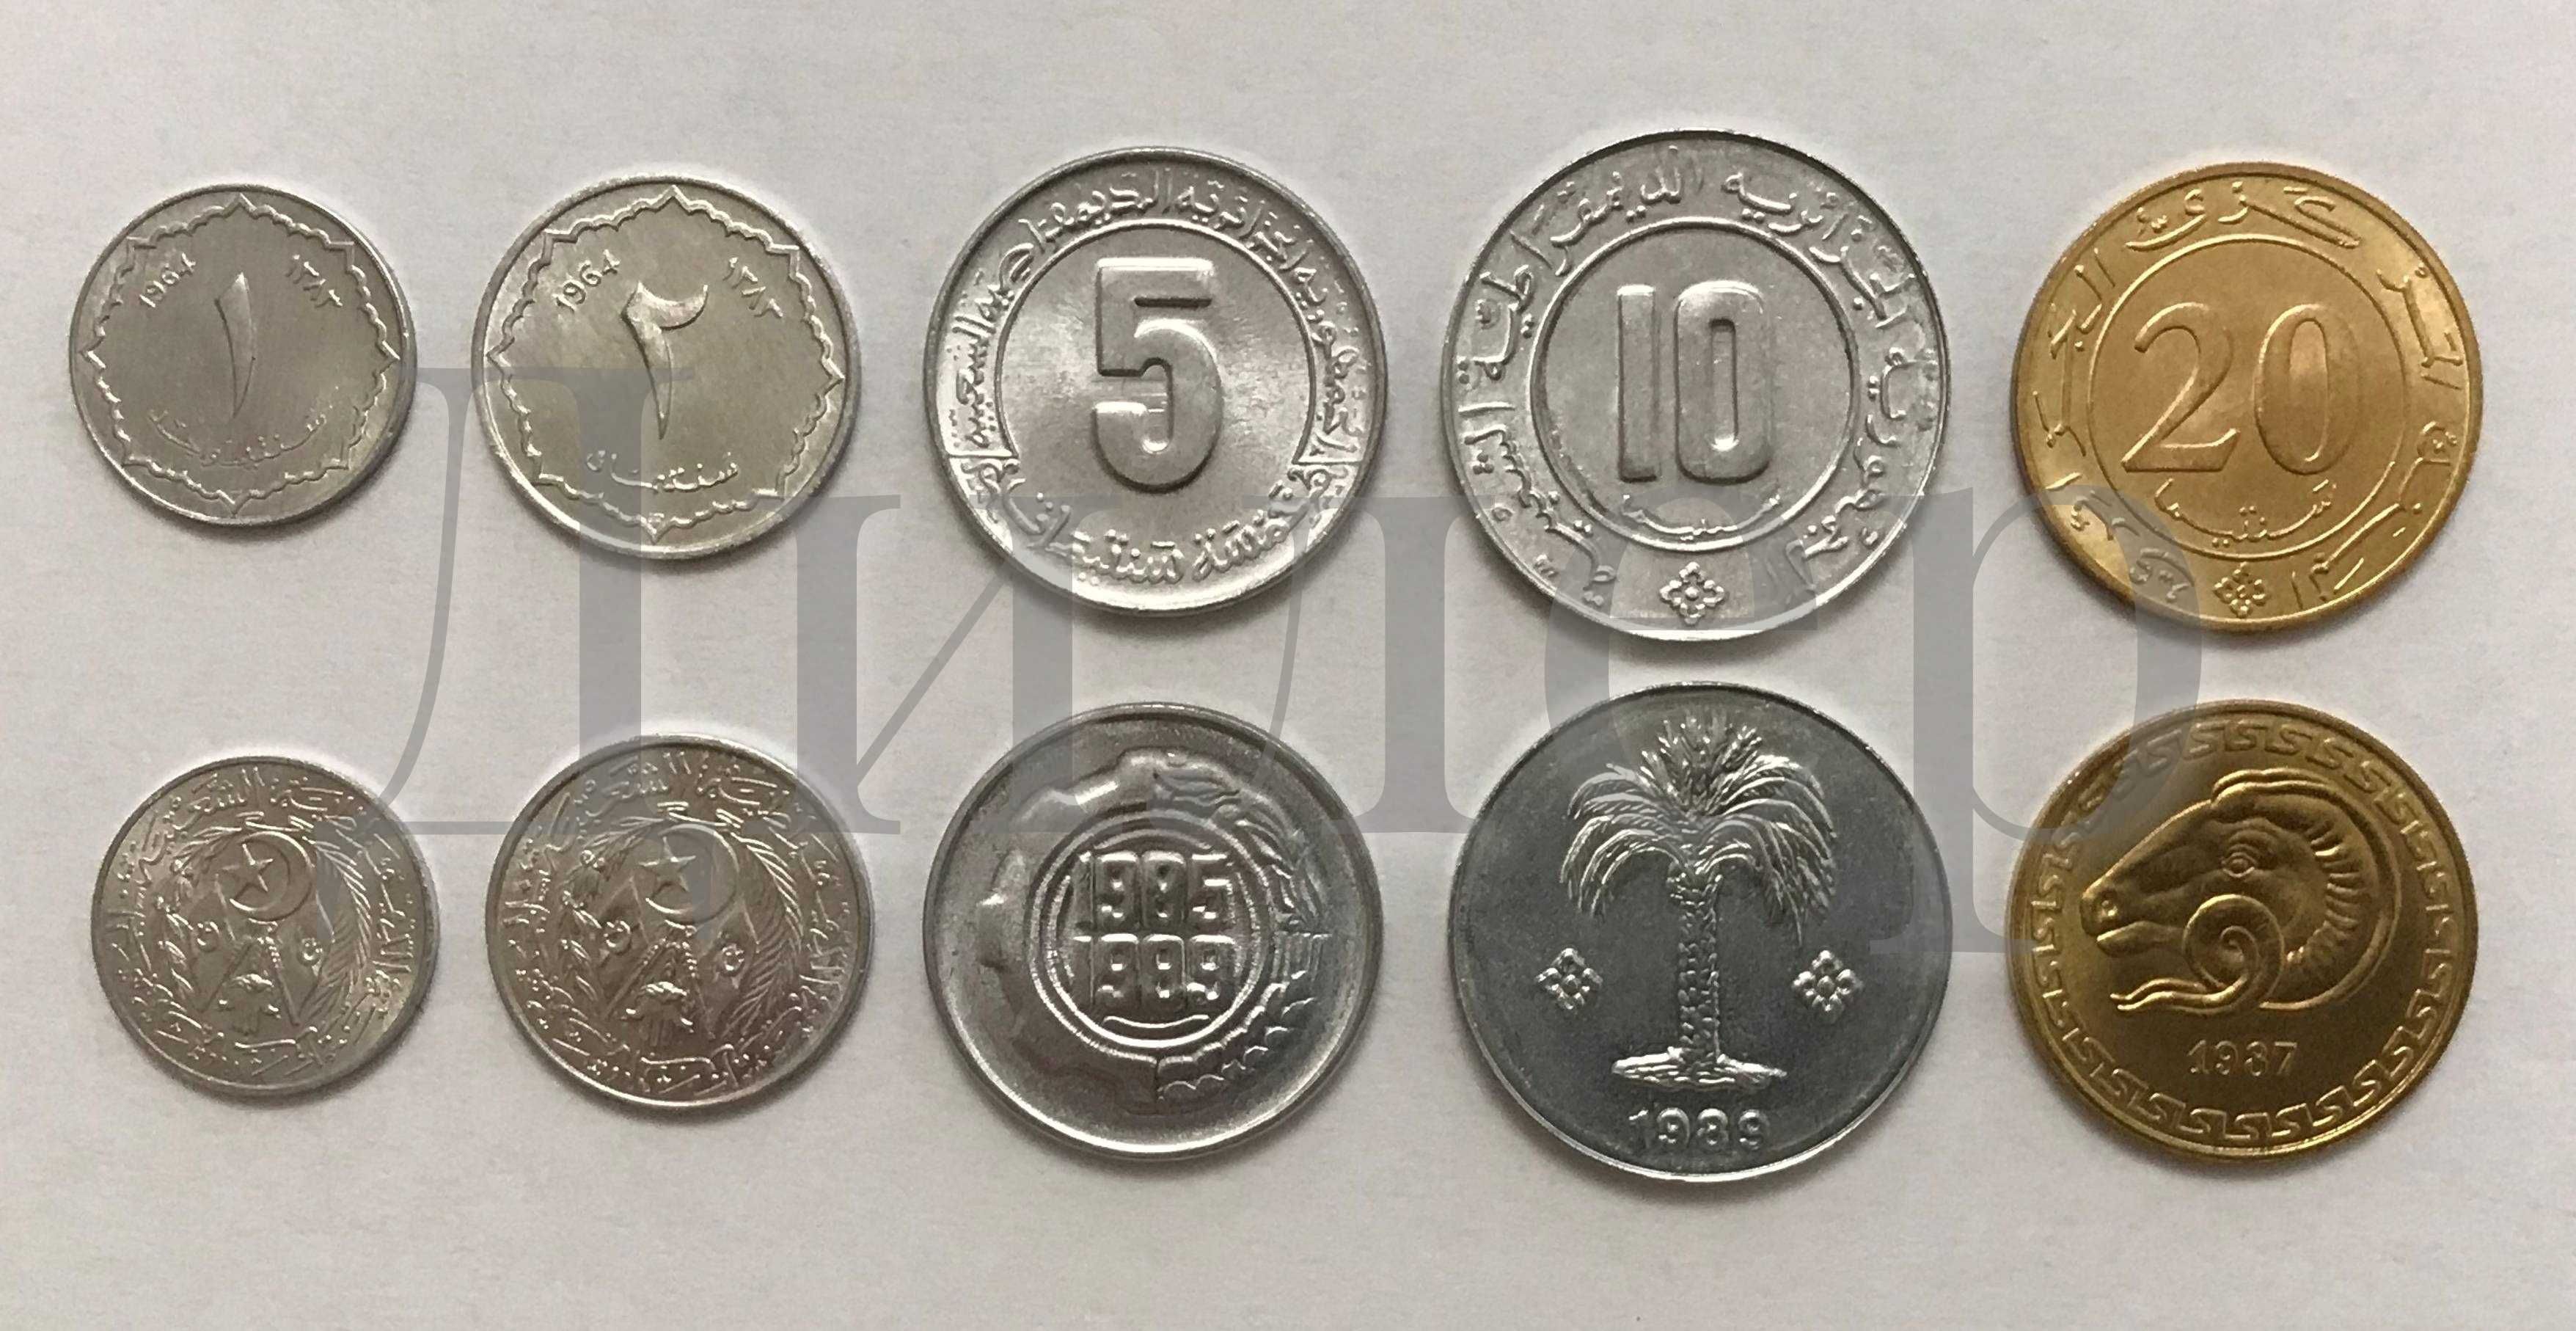 Наборы монет (Алжир, Марокко, Мавритания, Эритрея и др.) UNC